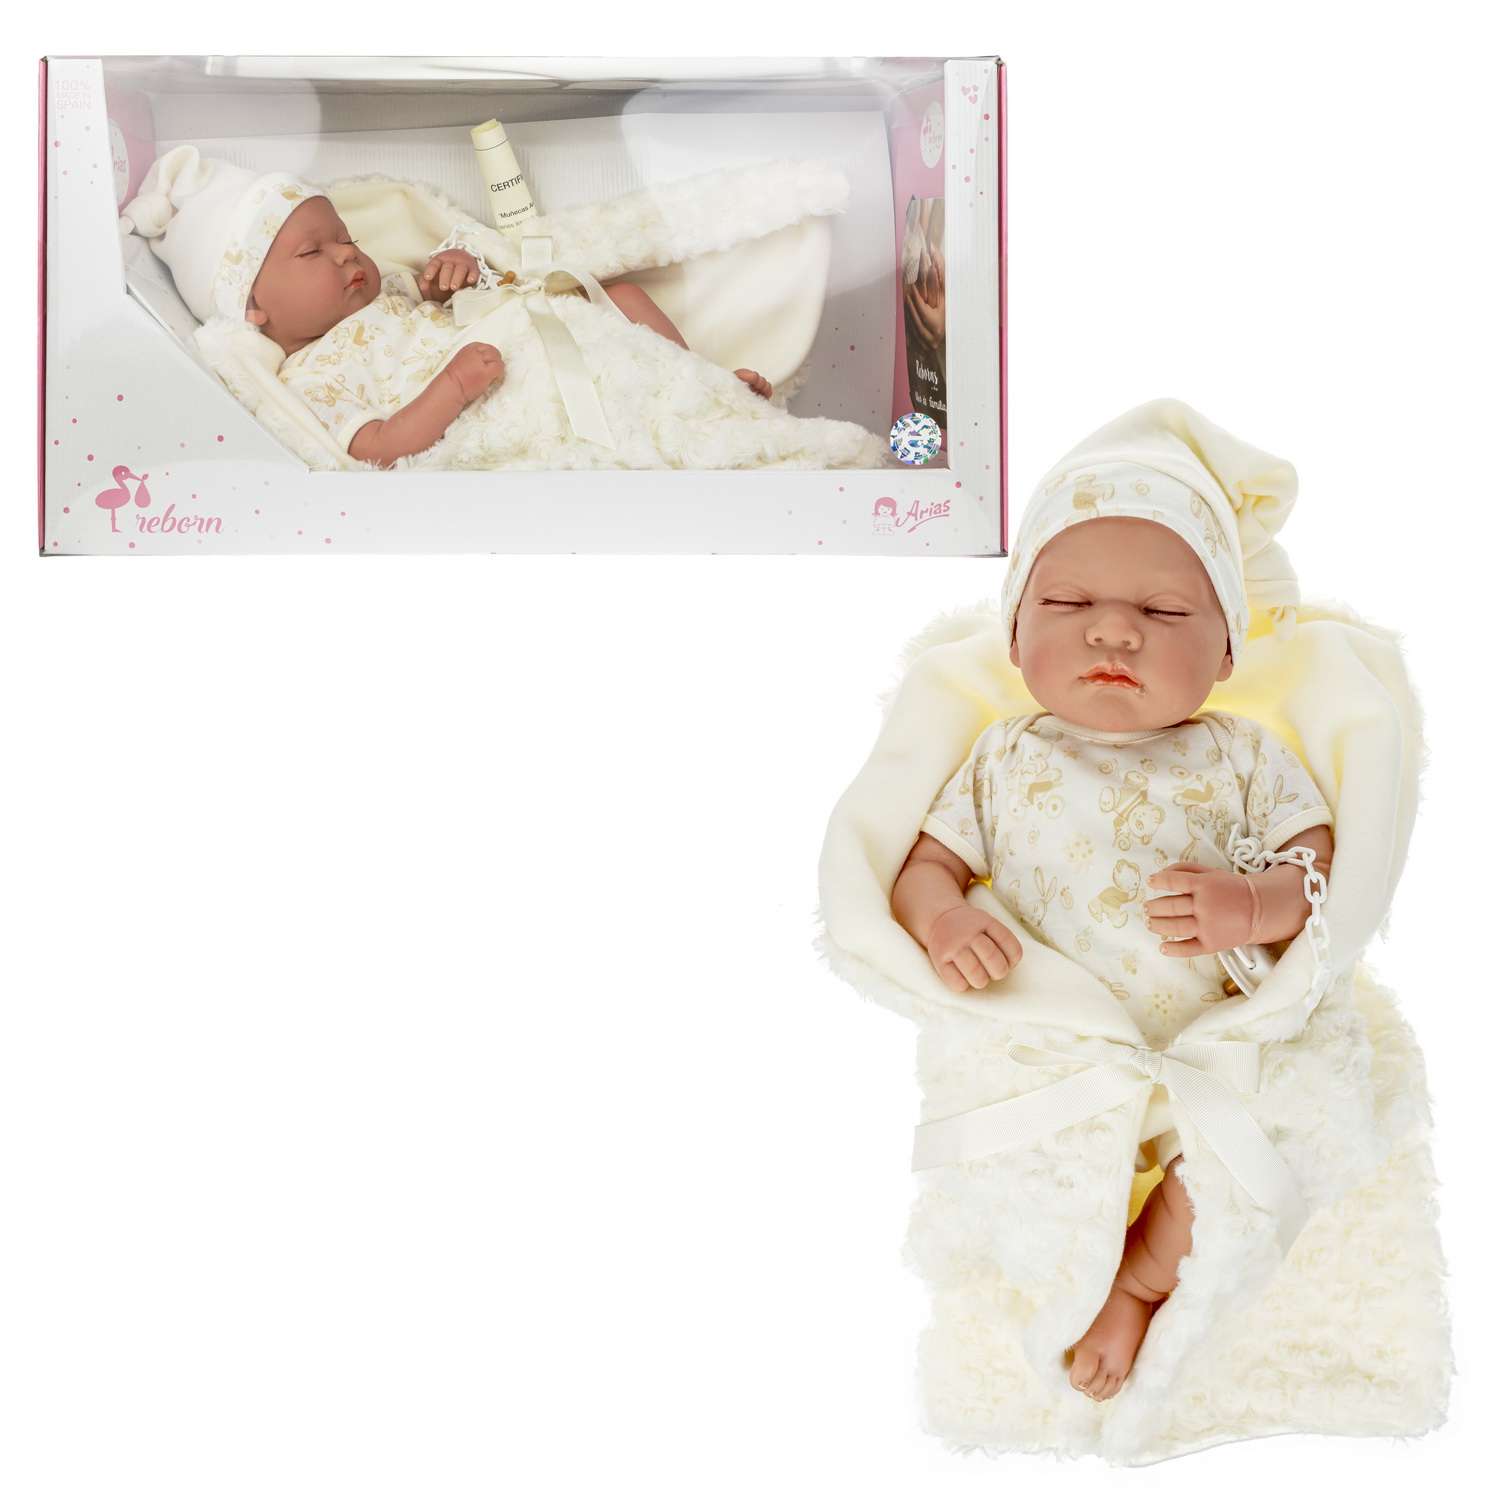 Кукла Arias ReBorns Pablo новорождённый пупс 45 см в одежде с соской одеялом подгузниками Т22108 - фото 4